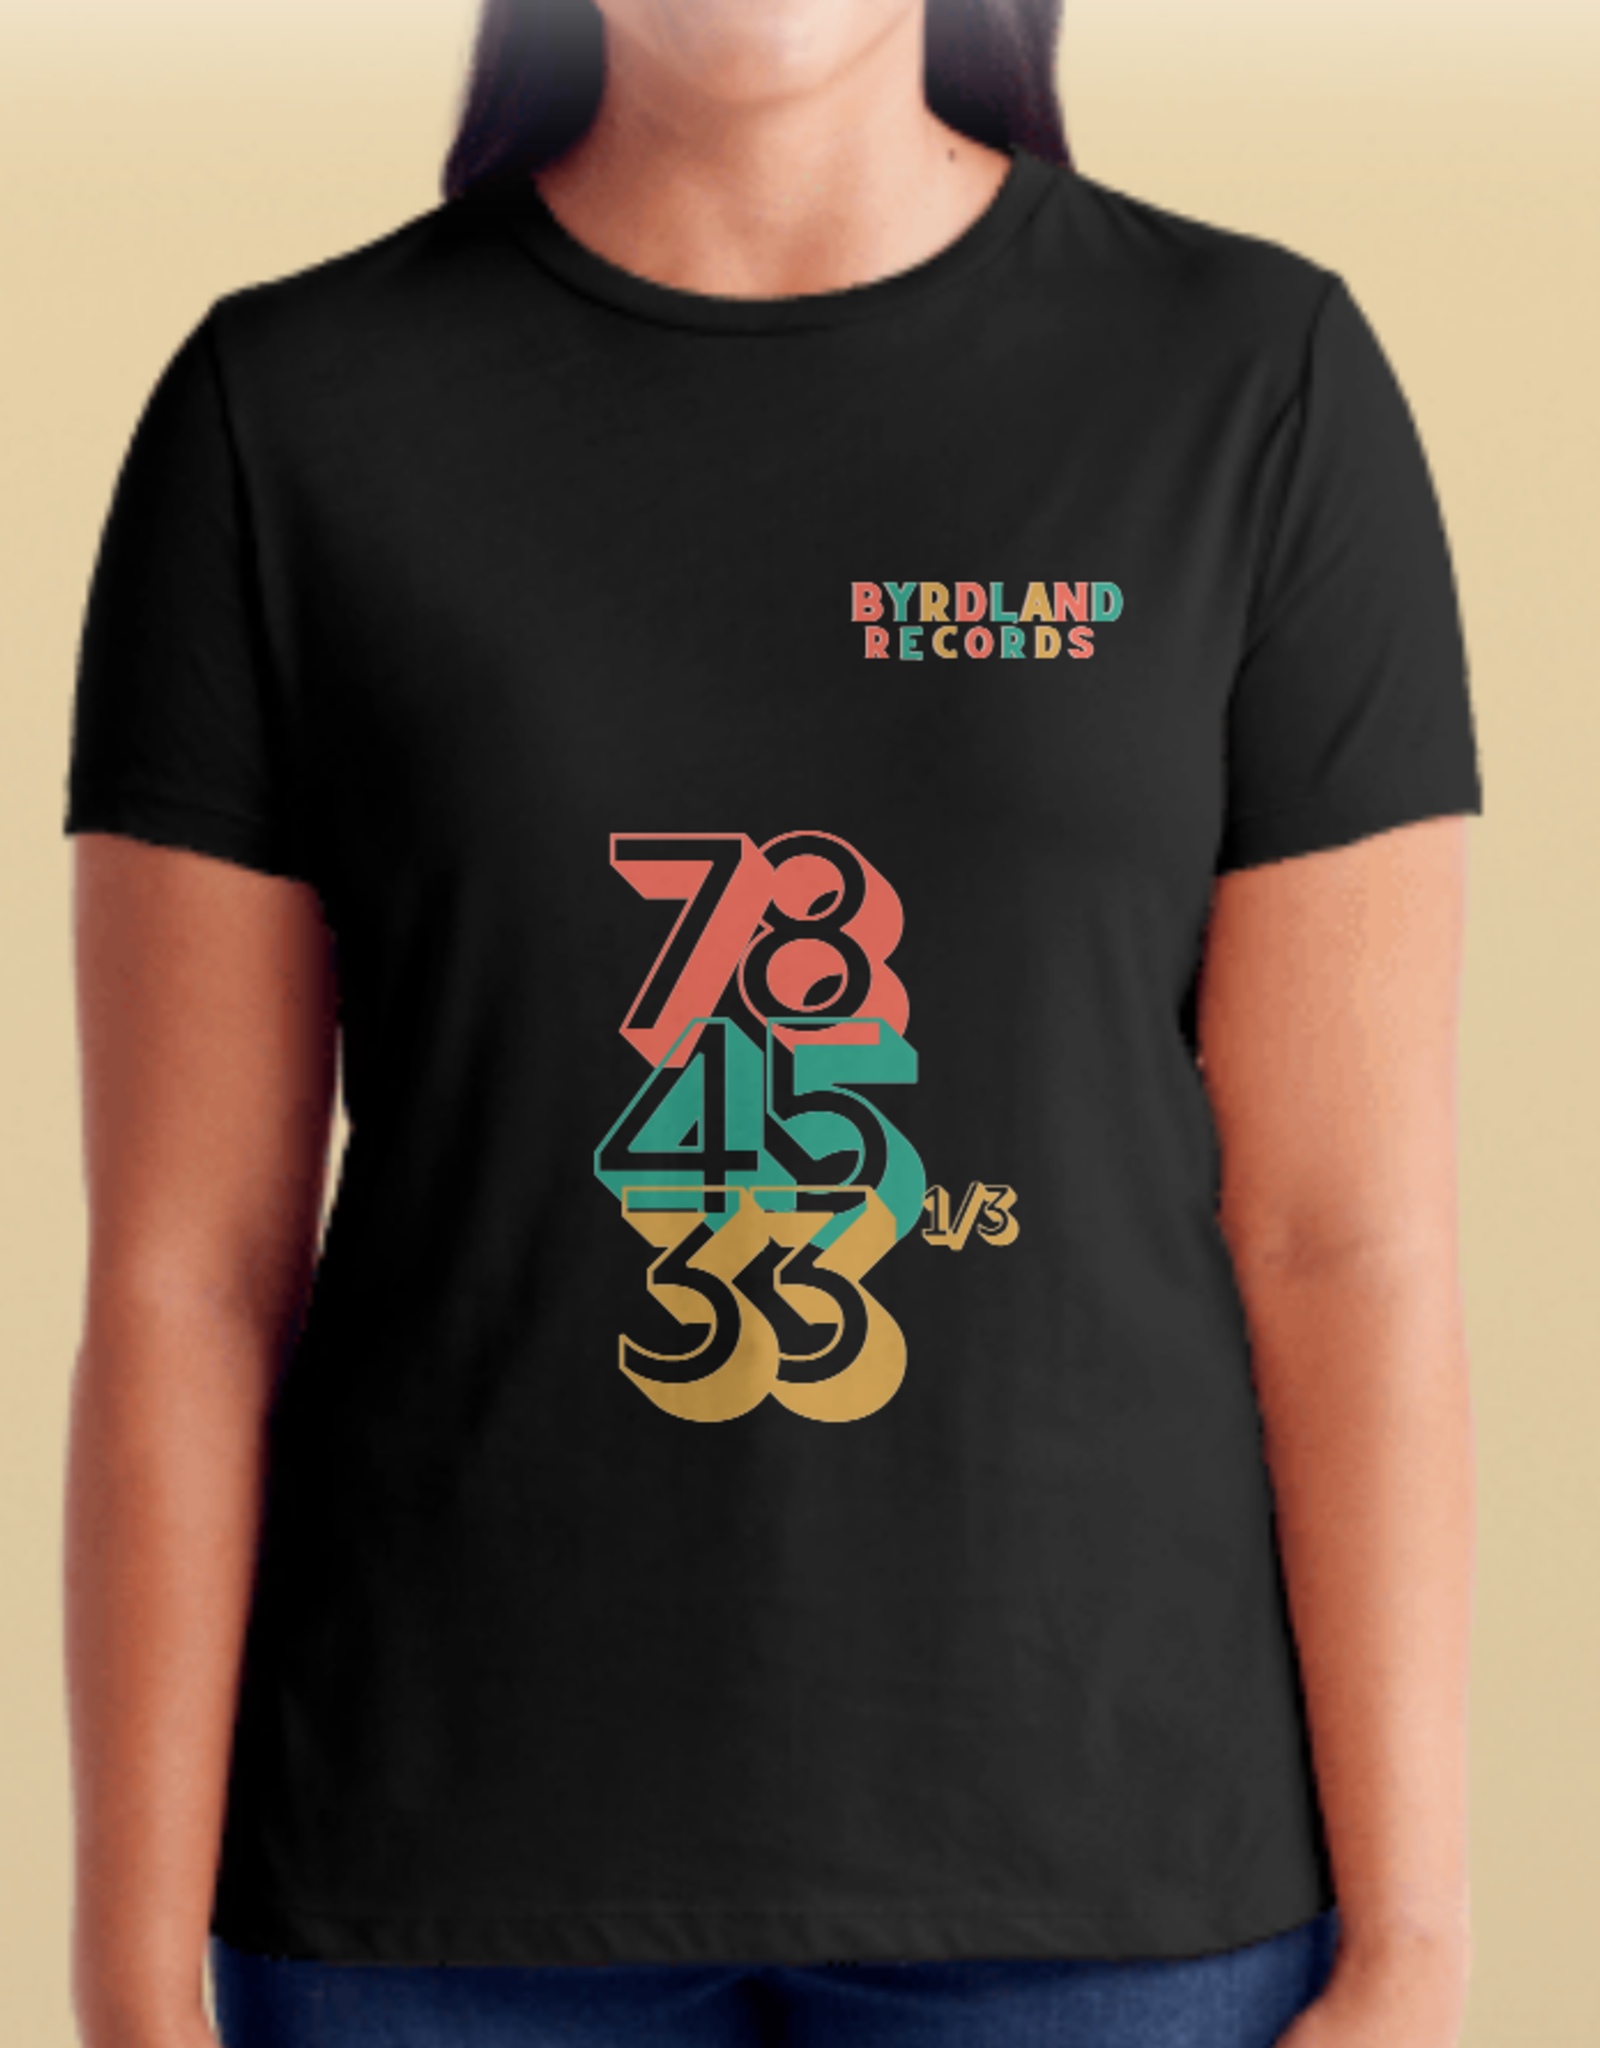 Byrdland Shirt- 78, 45, 33 1/3  - L